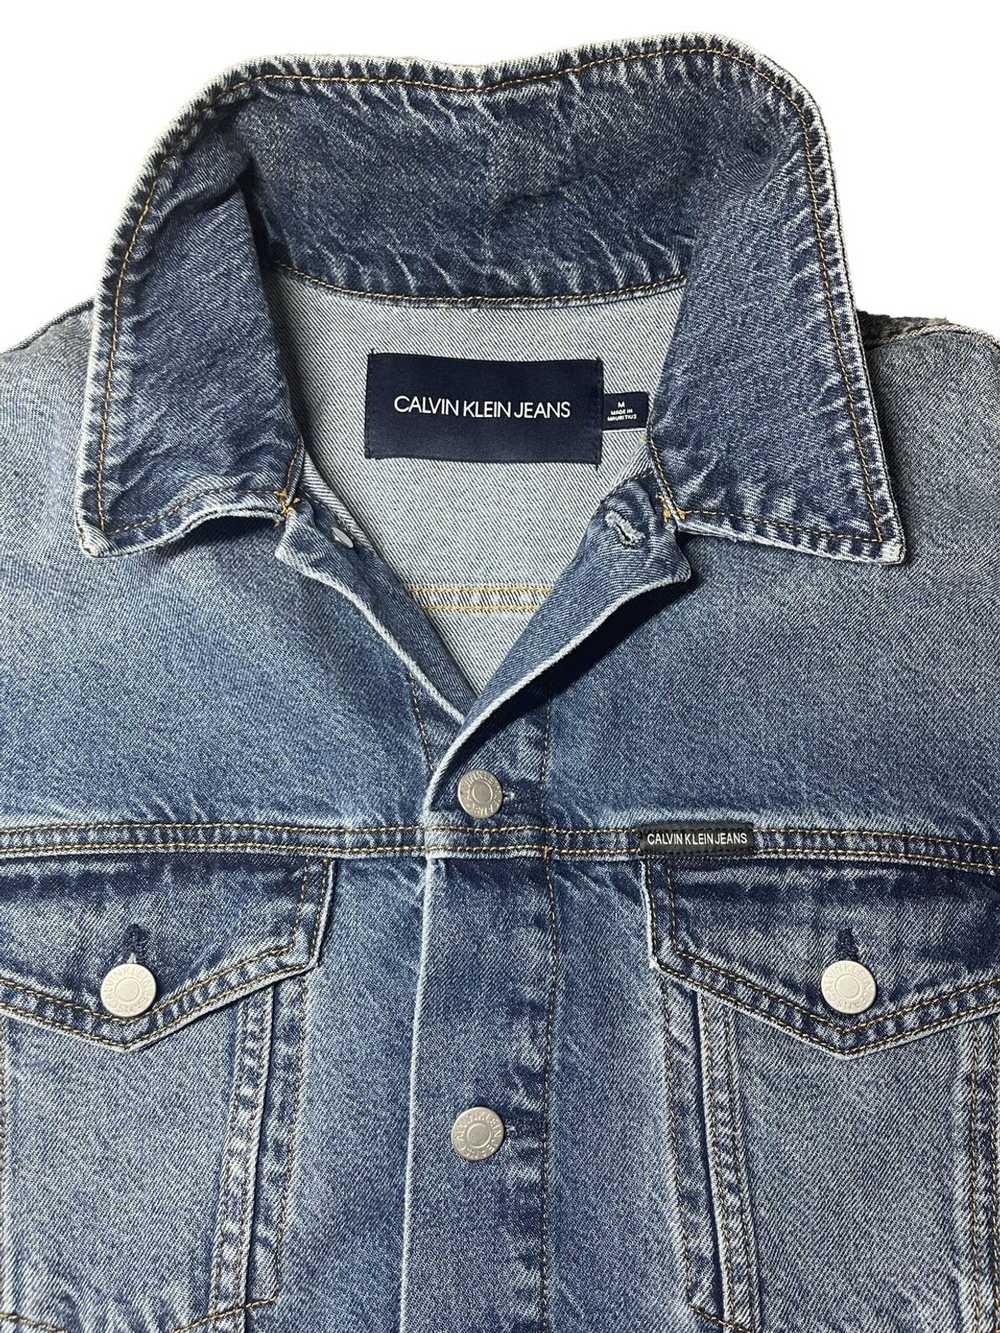 Calvin Klein Calvin Klein Denim Jacket - image 5